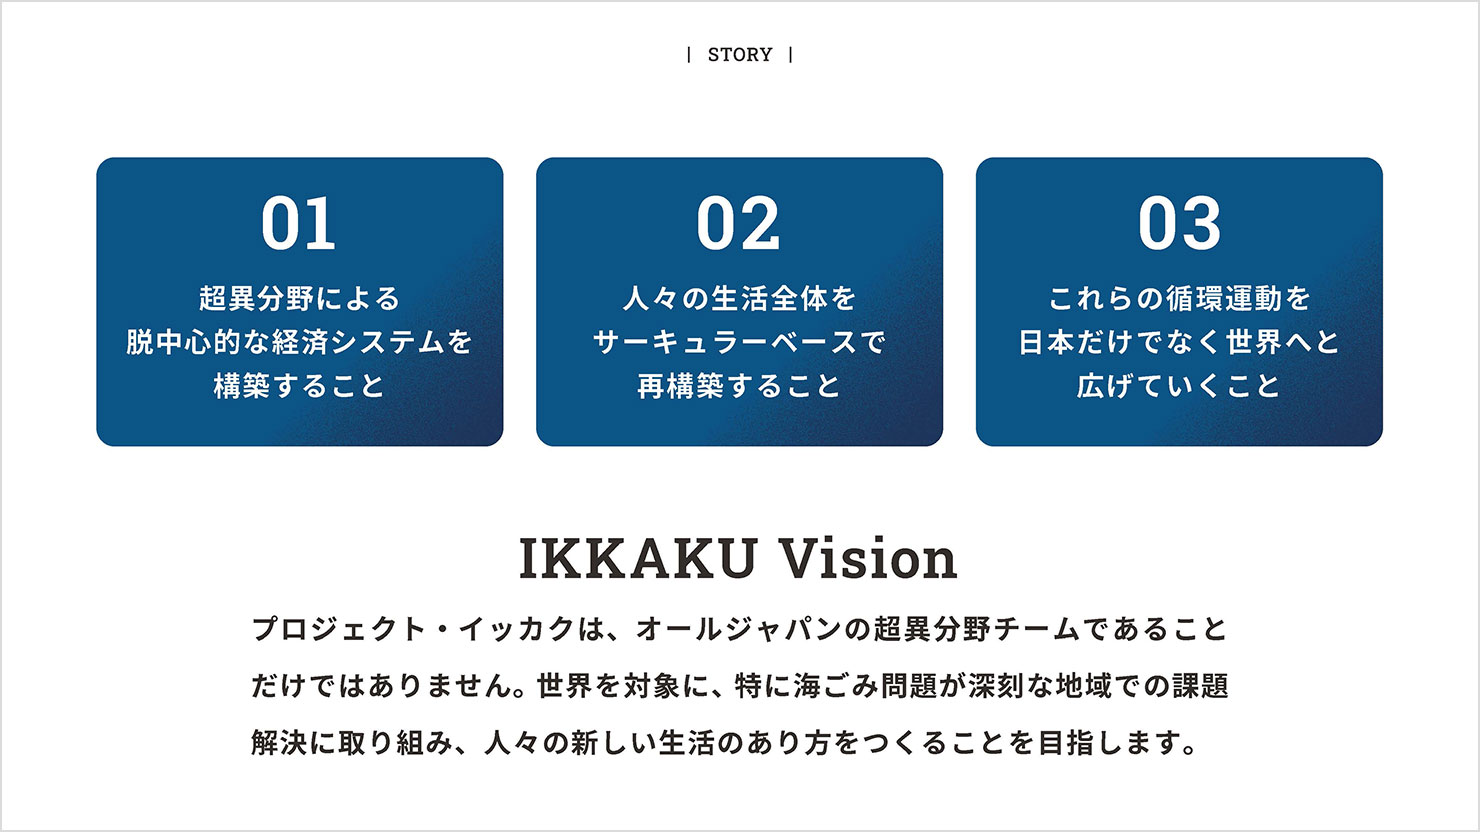 スライド：プロジェクト・イッカクの3つのビジョンを説明。3つのビジョンは濃いブルーの地に白抜き文字にすることで、デザインにメリハリを付けつつ読みやすさも担保している。